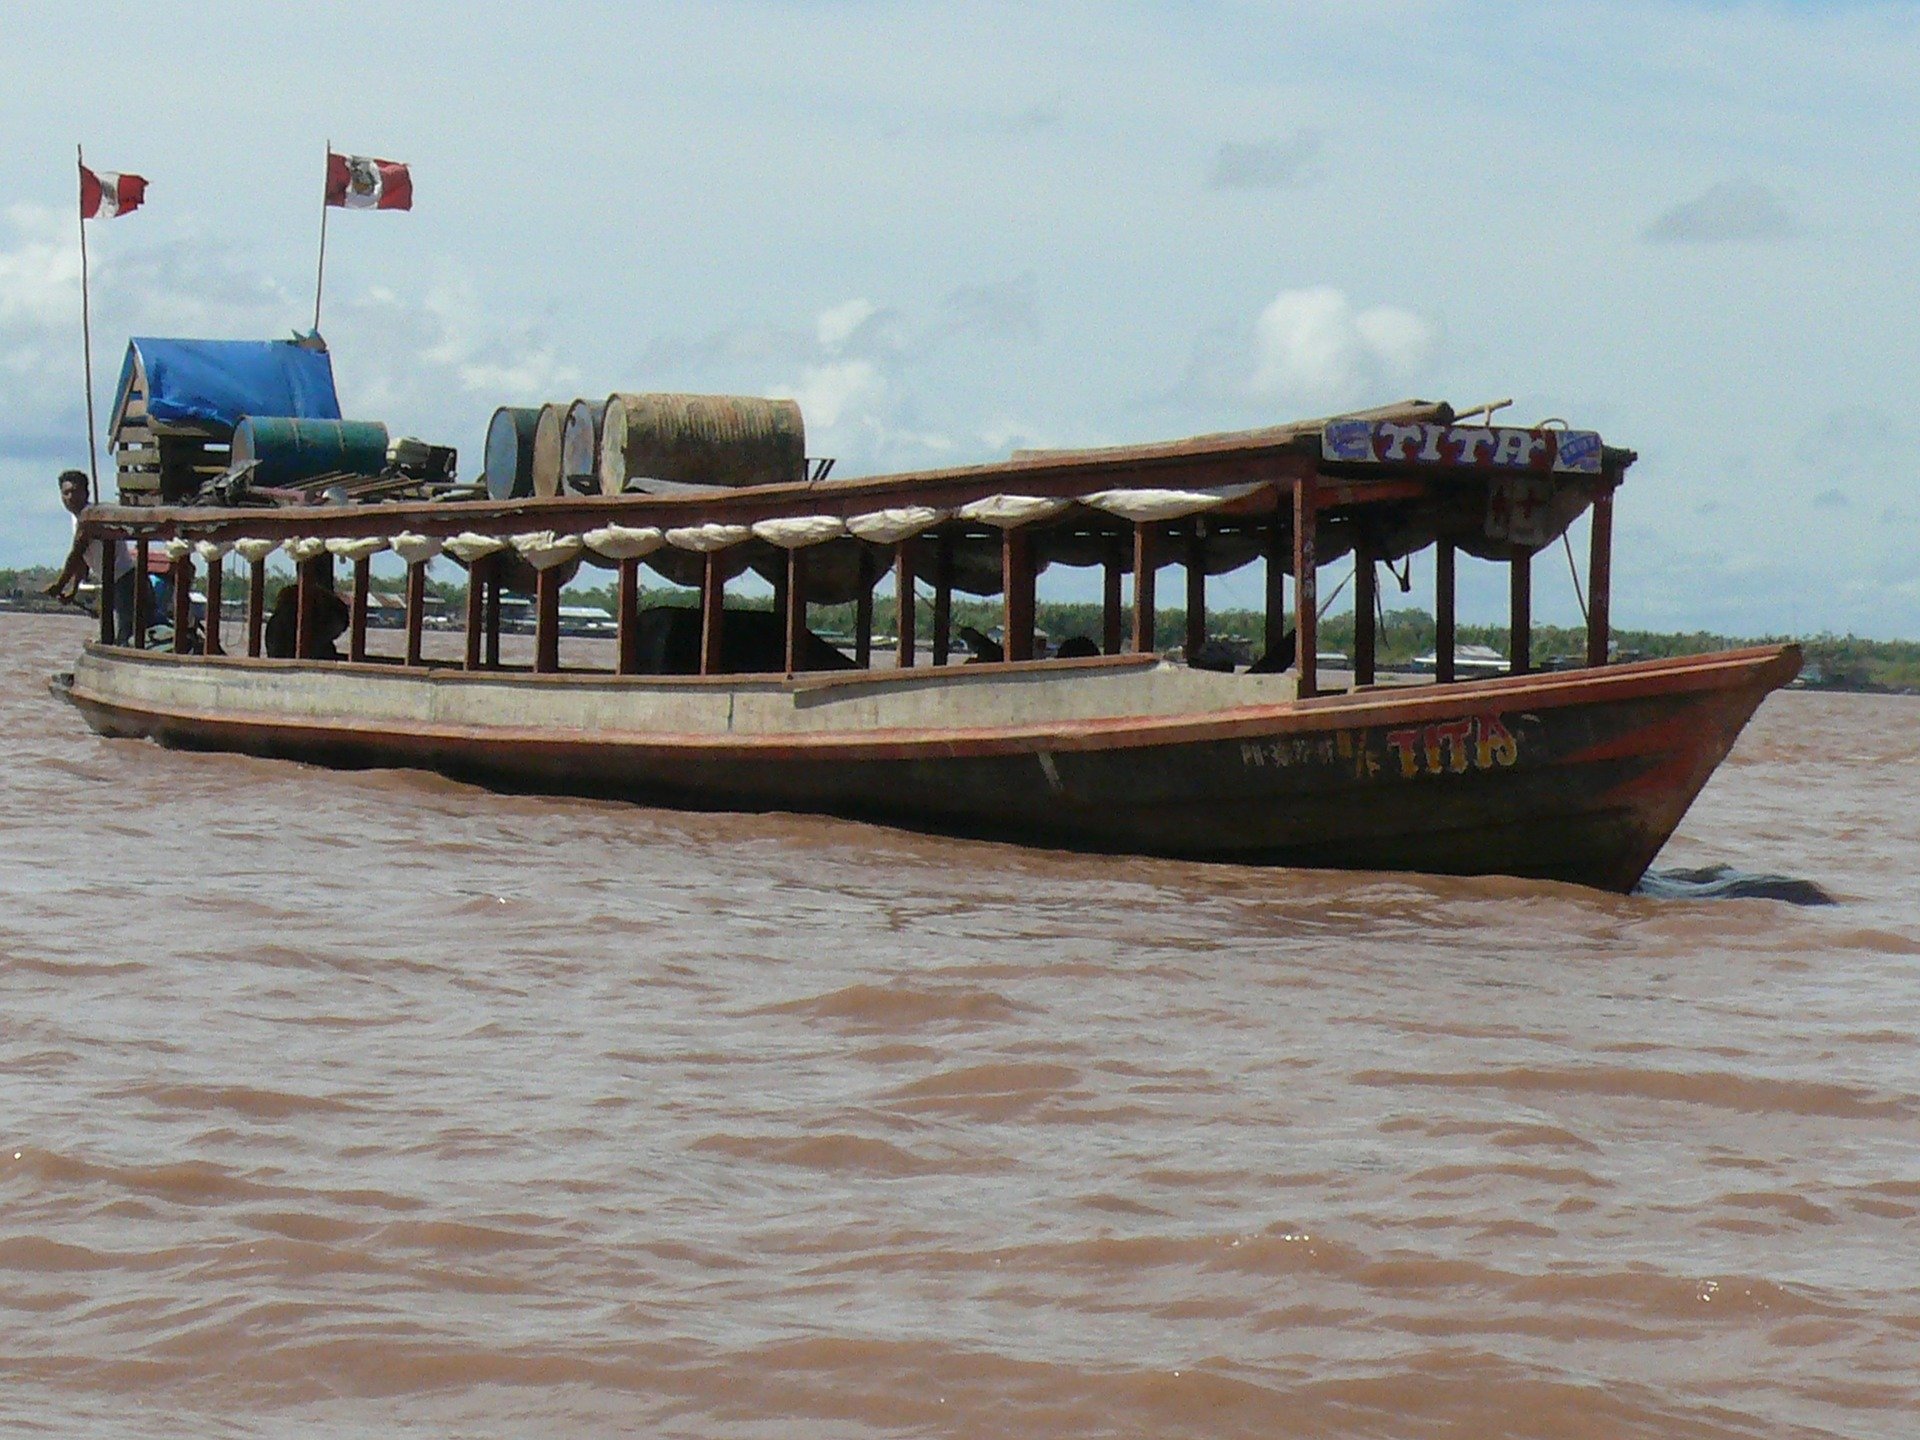 Entdecken Sie den Amazonas mit dem Flussschiff - Top 10 Sehenswürdigkeiten im Amazonas-Gebiet Perus